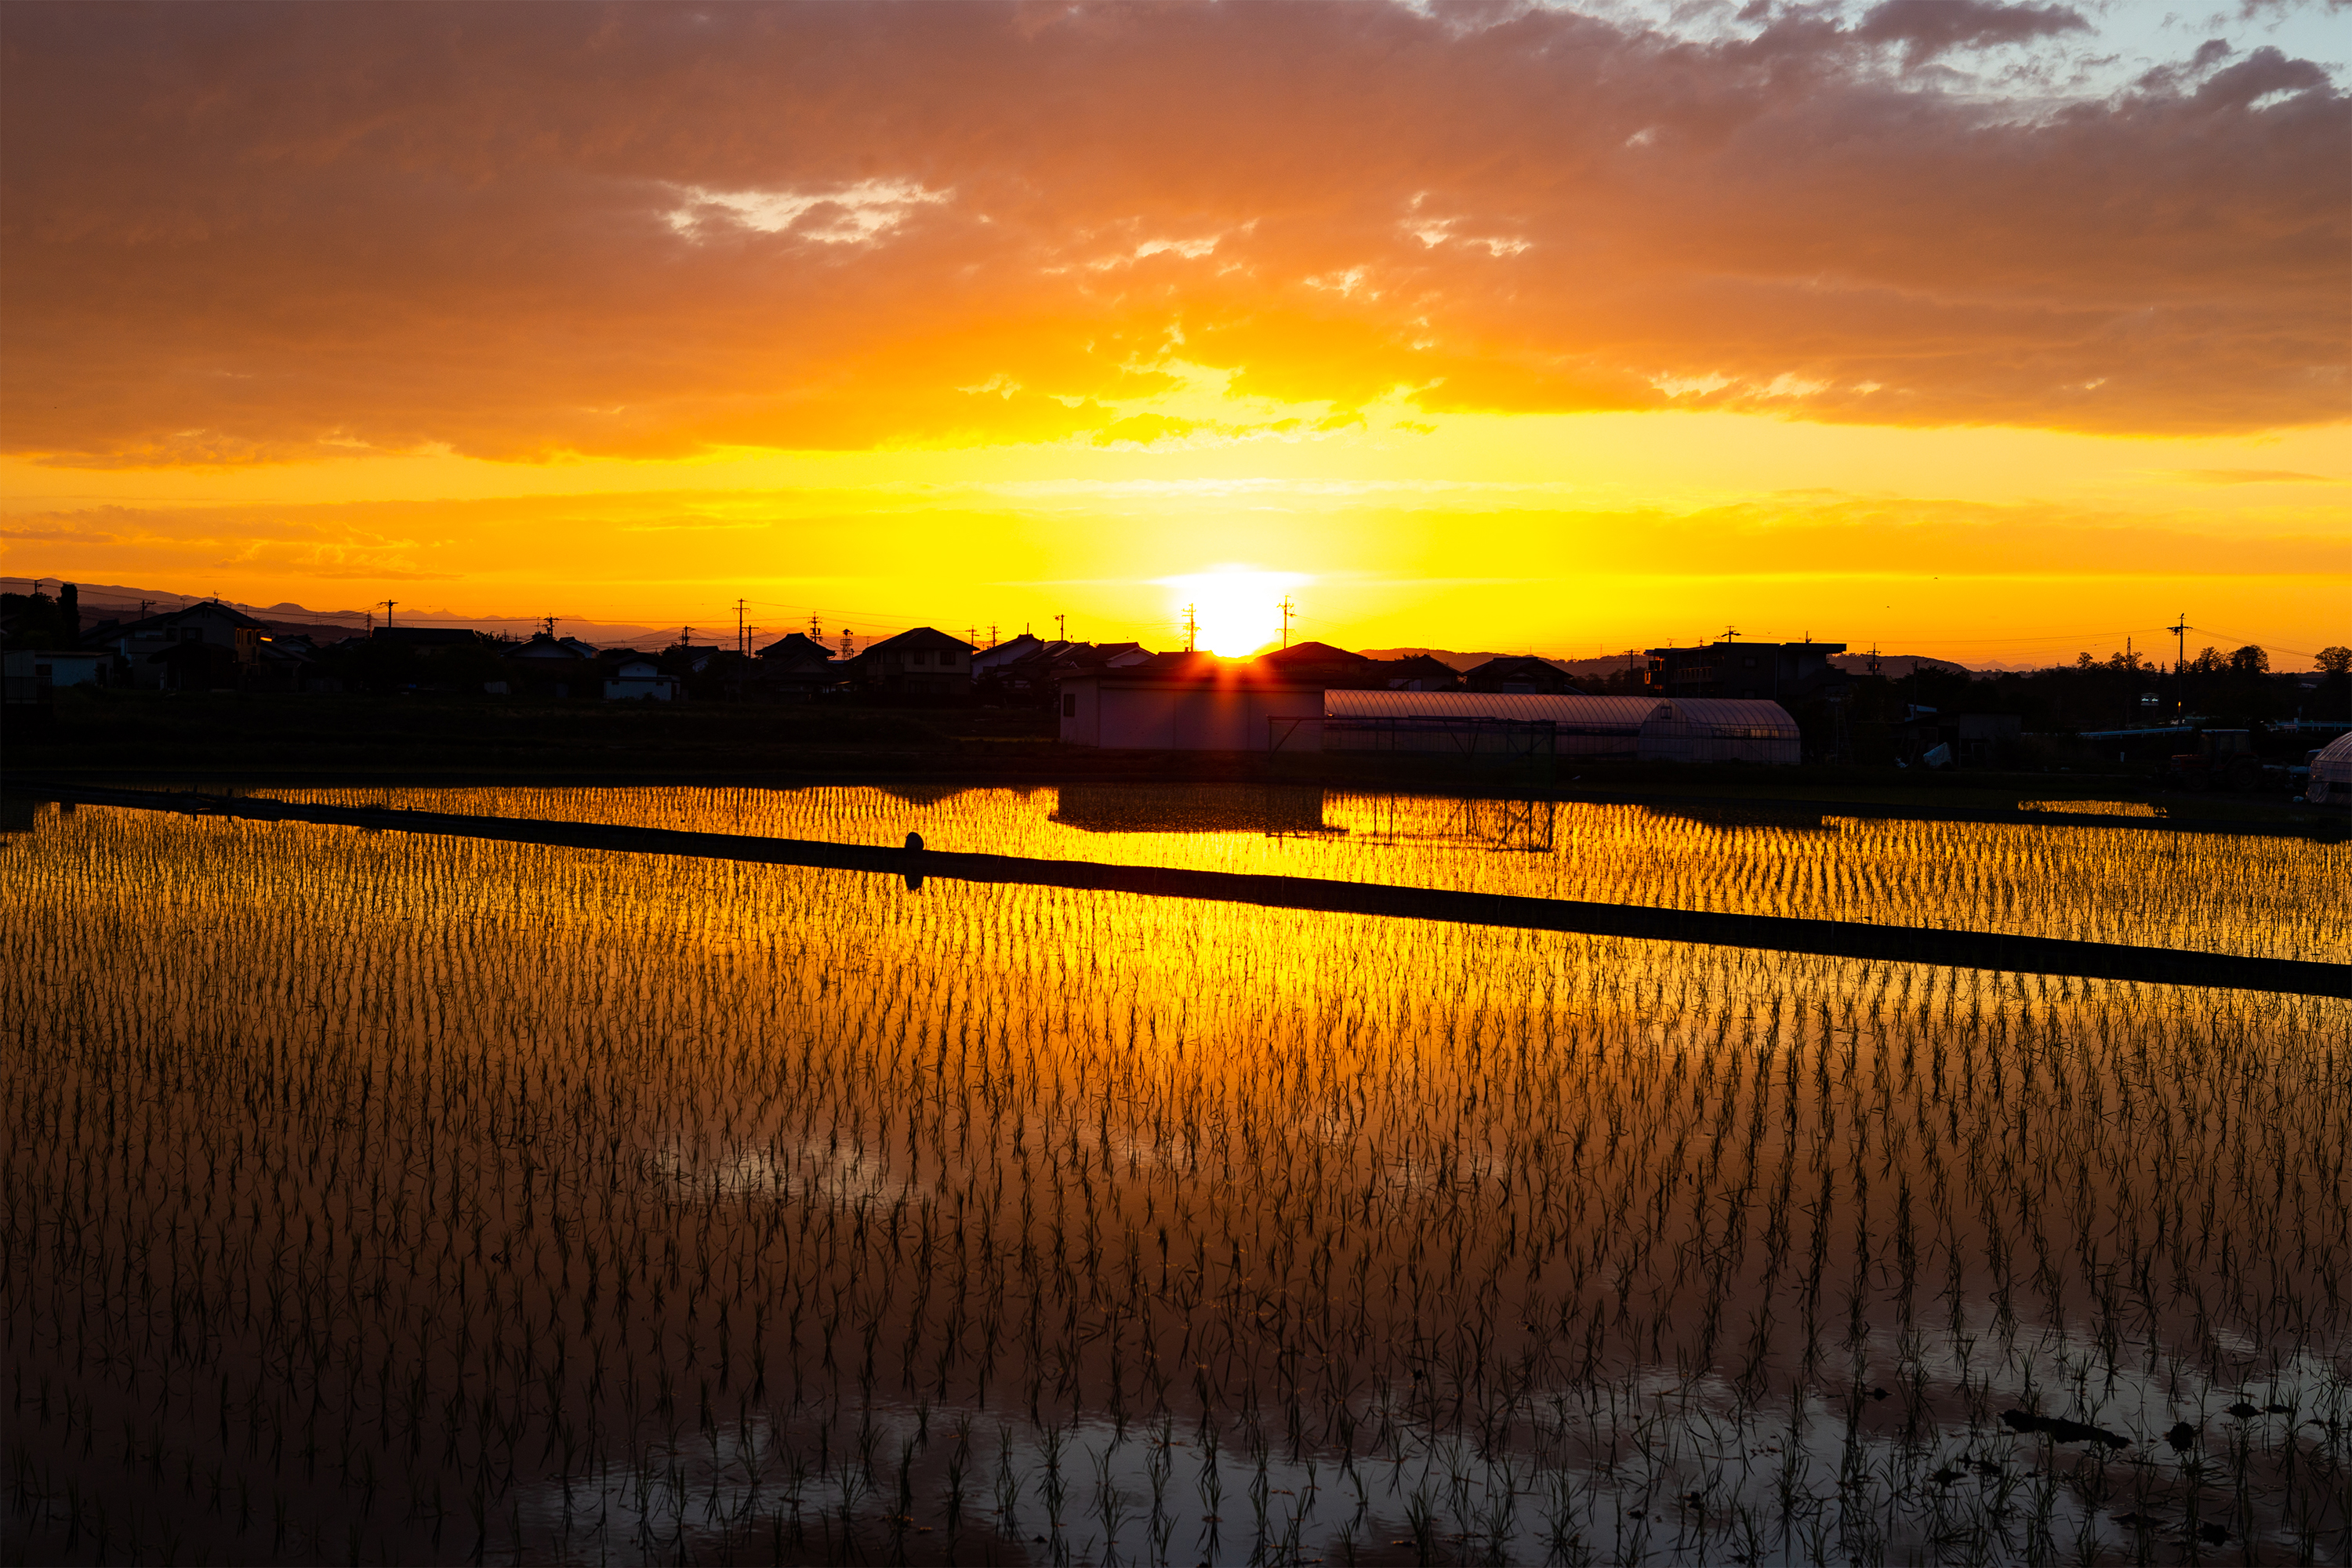 水田に反射する夕日 夕焼け 02 無料の高画質フリー写真素材 イメージズラボ